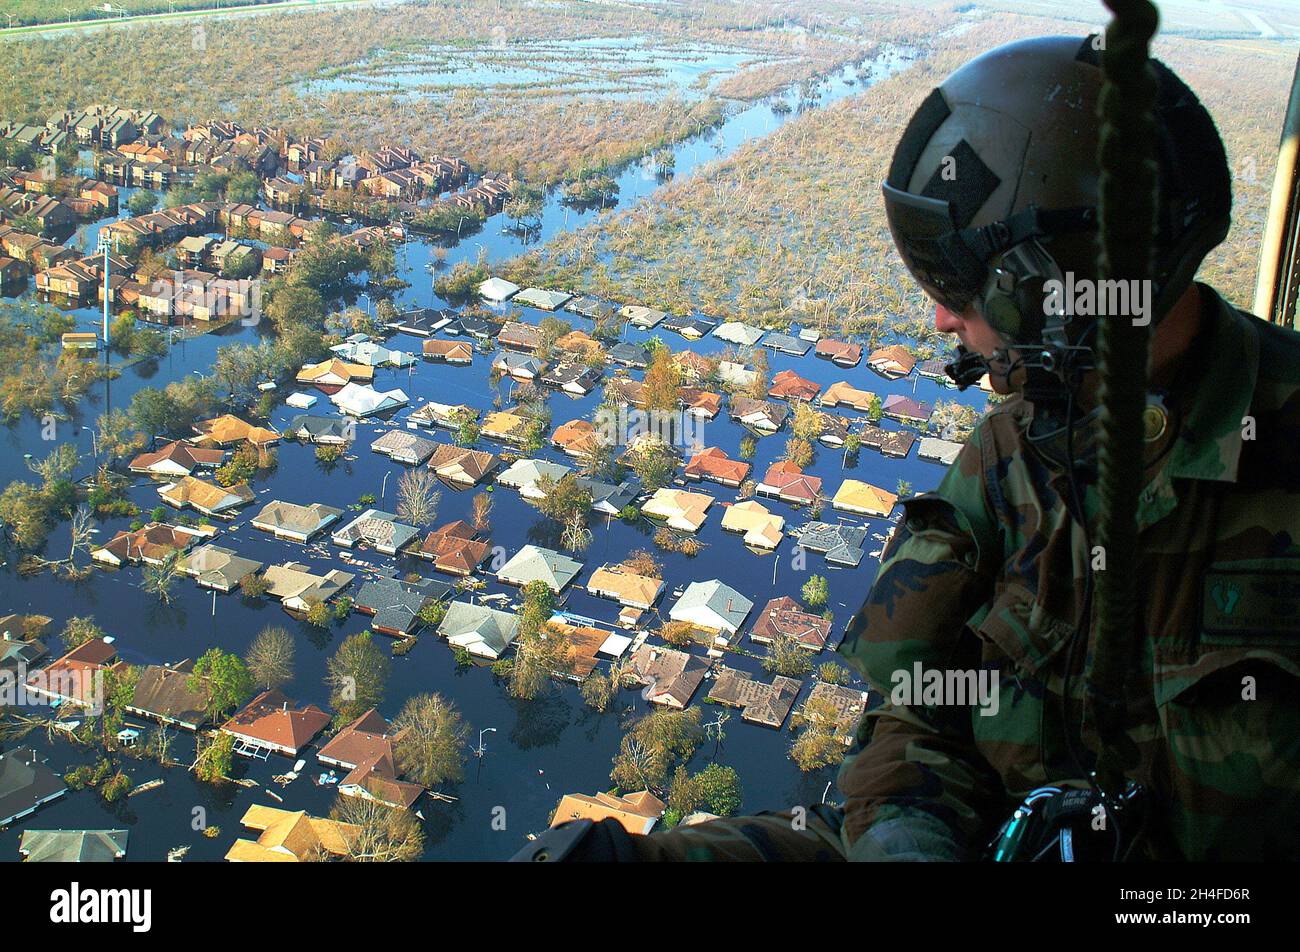 NEW ORLEANS, LOUISIANA, USA - 04. September 2005 - Techn. Sgt. Keith Berry blickt in die überfluteten Straßen von New Orleans, um nach Überlebenden zu suchen. H Stockfoto